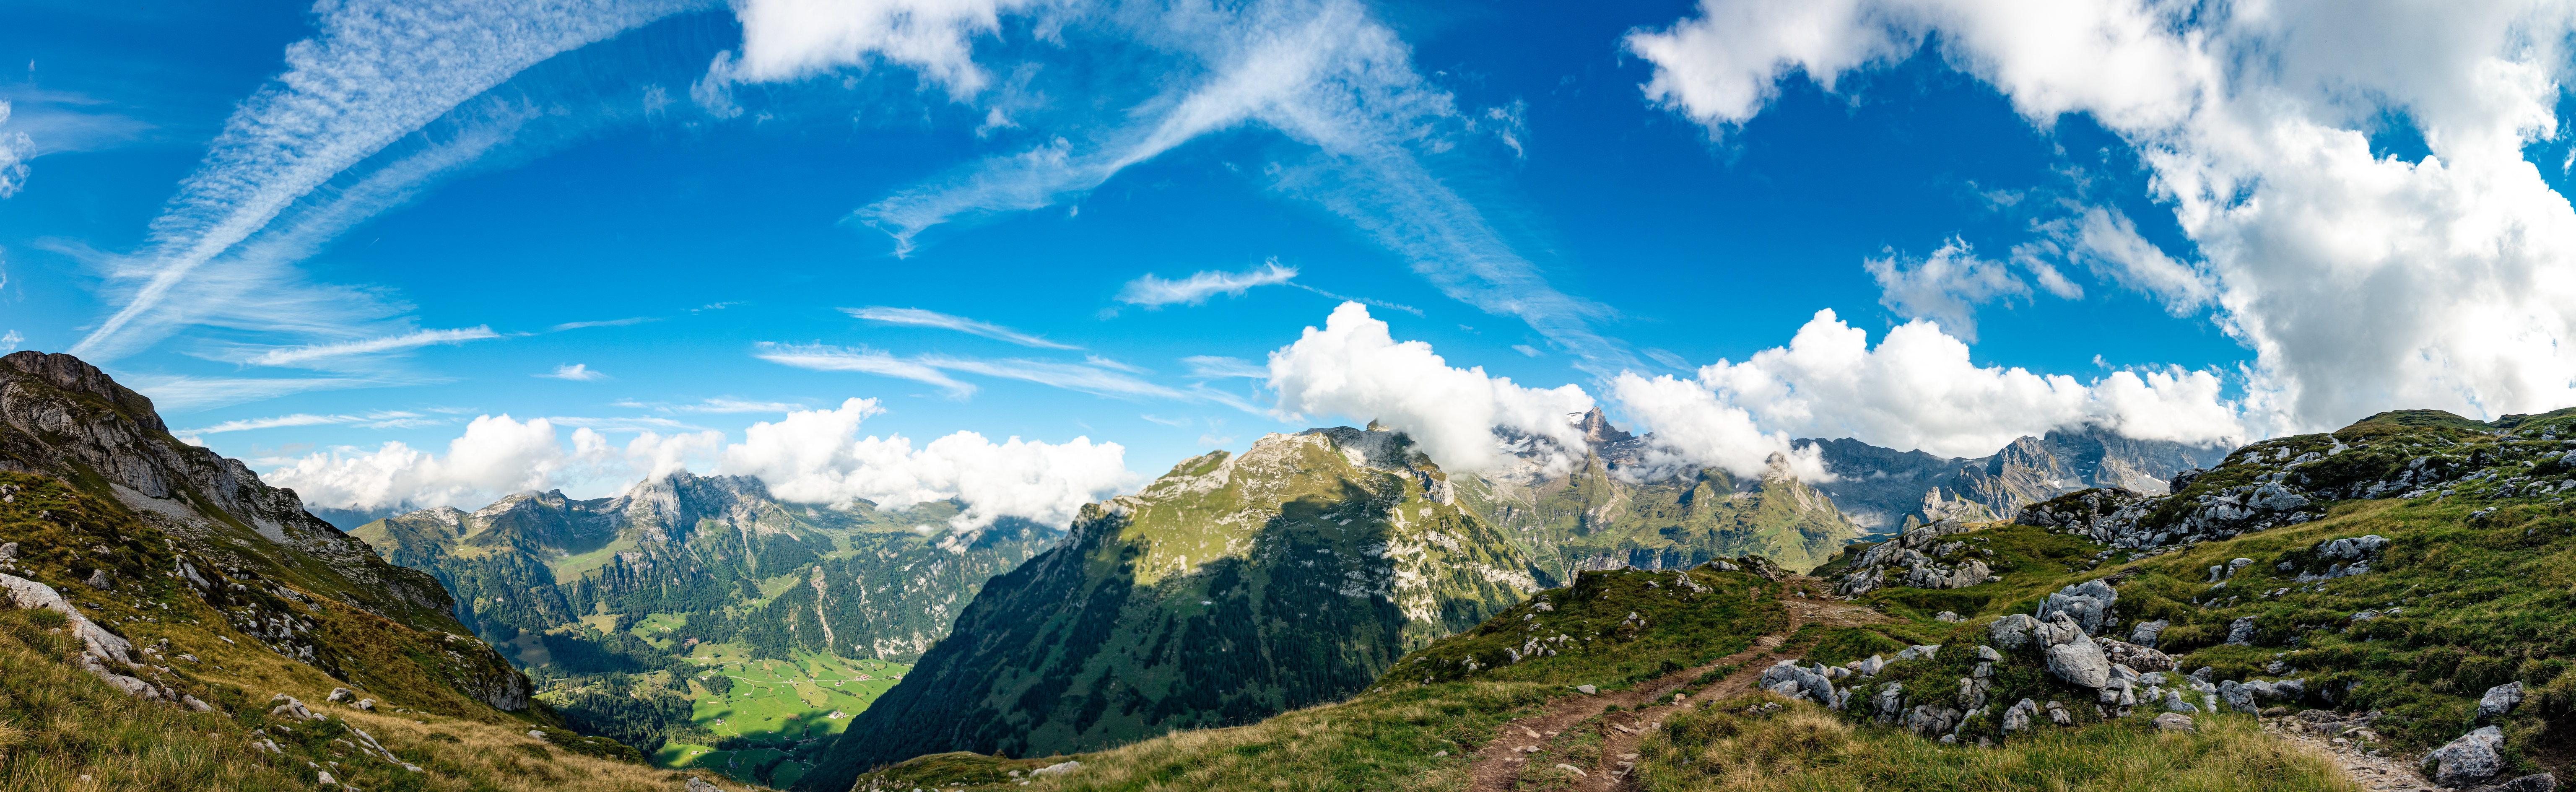 Фотография Альпы Швейцария панорамная гора Природа Небо облачно 6144x1889 альп Панорама Горы Облака облако